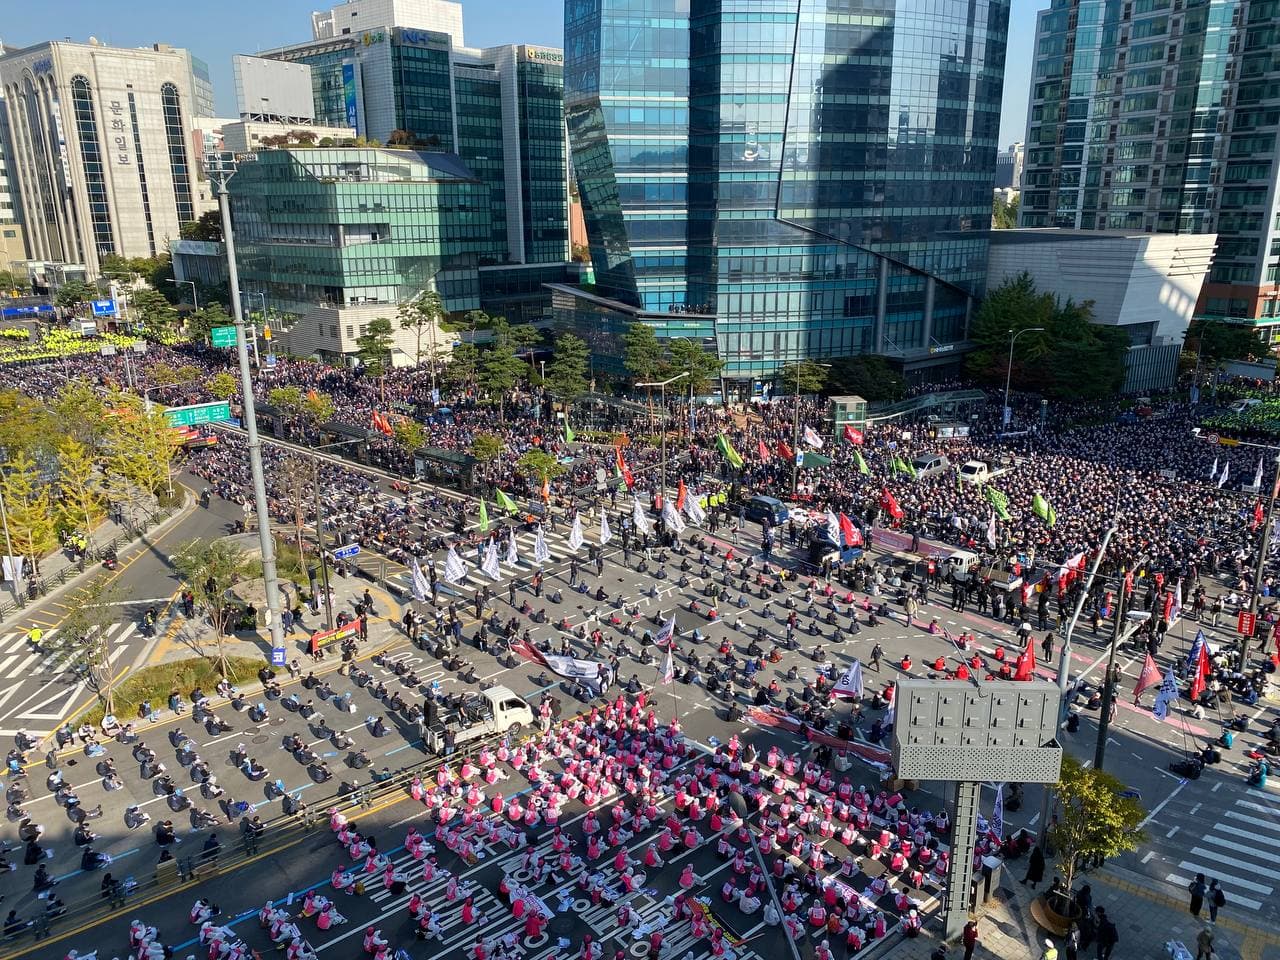 来自全国各地的约8万名工人参加了集会。//图片来源: pptec, Twitter